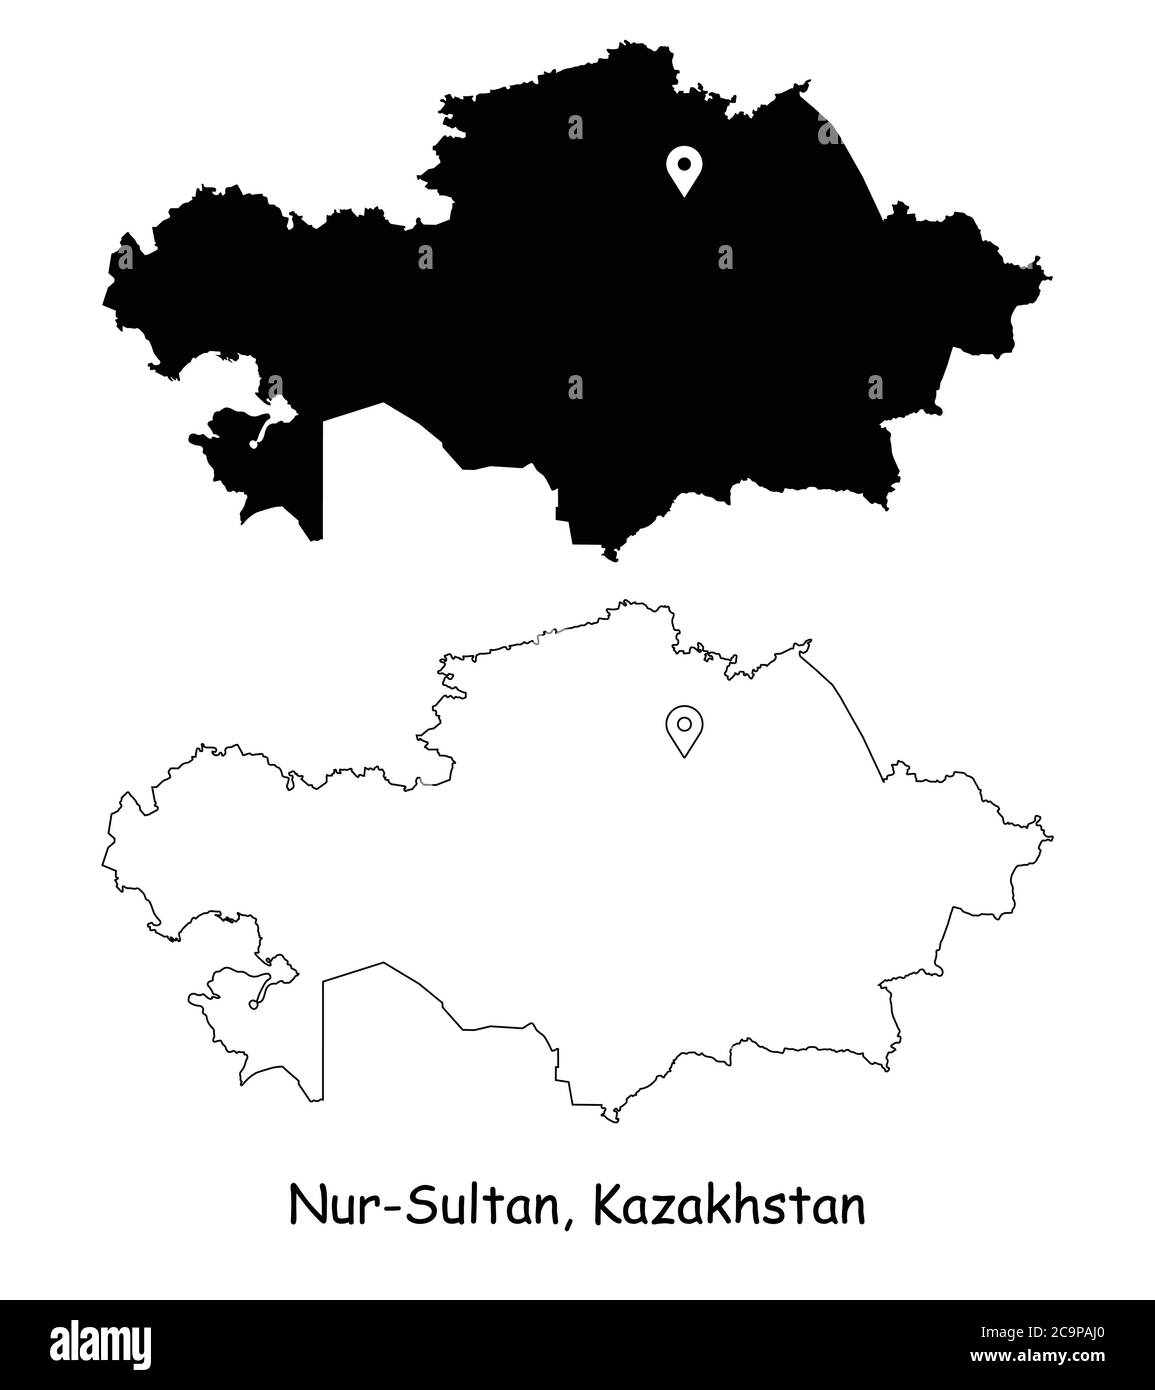 Nur Sultan Kazakhstan. Mappa dettagliata del Paese con il pin della posizione sulla città capitale. Silhouette nera e mappe di contorno isolate su sfondo bianco. VEC. EPS Illustrazione Vettoriale